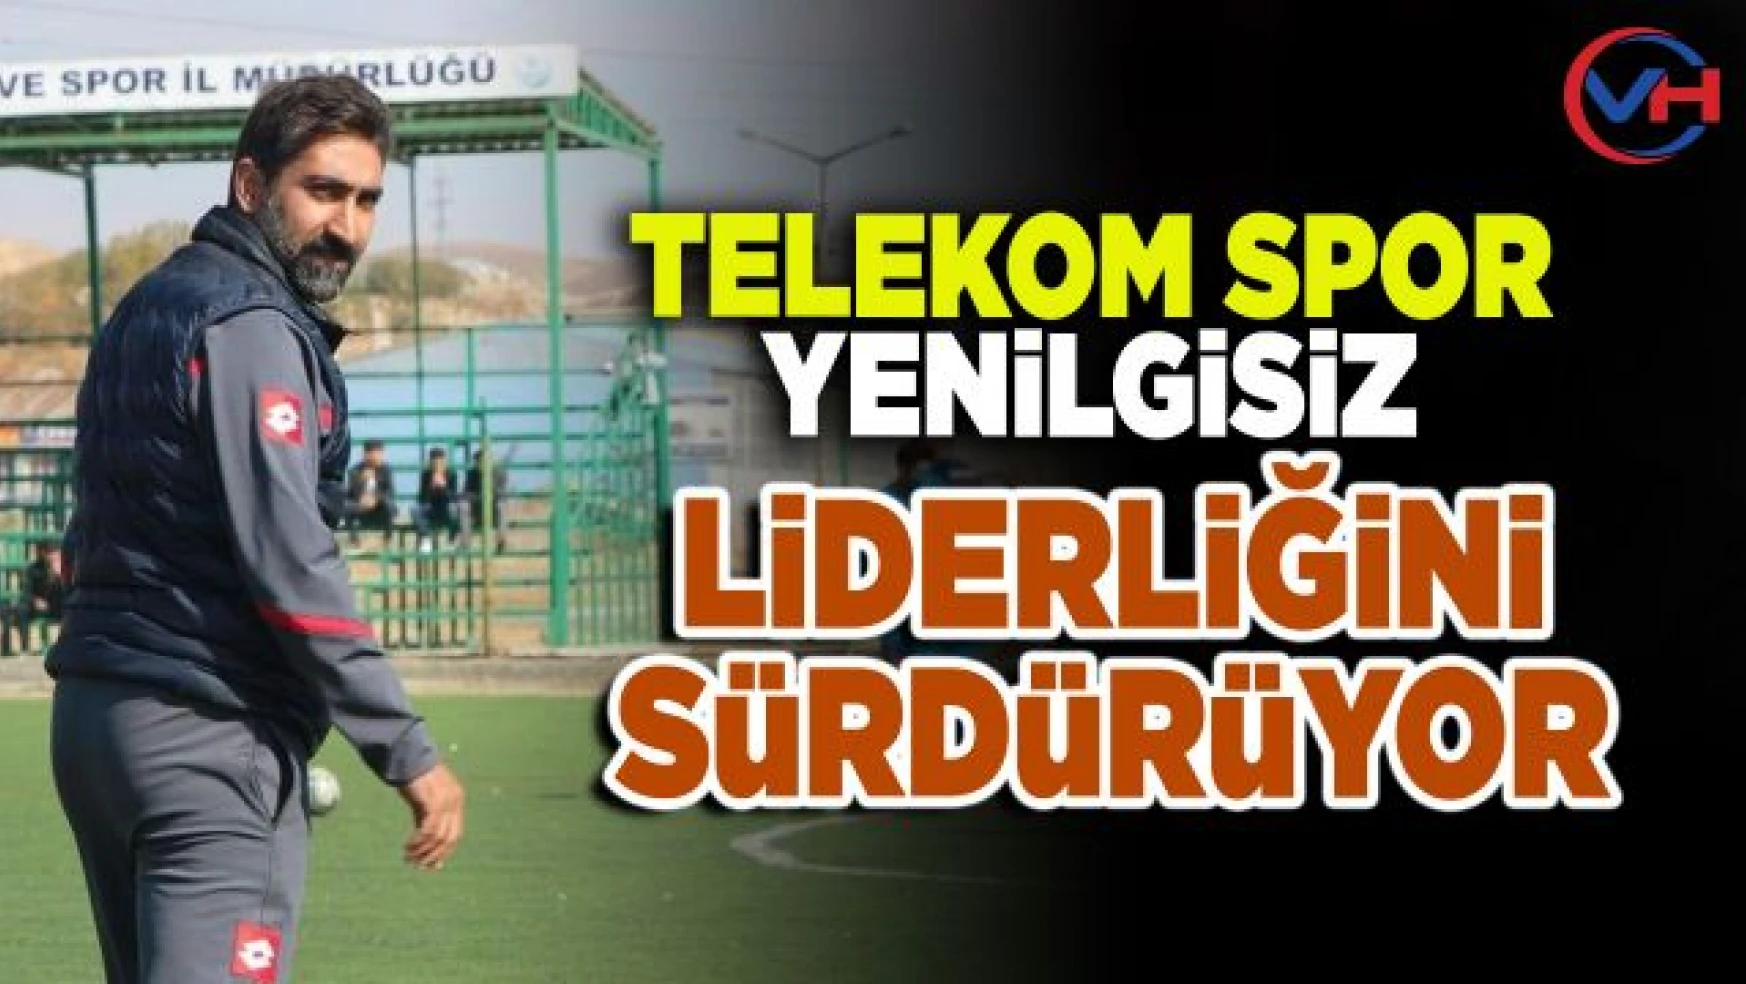 Van Türk Telekomspor namağlup lider!